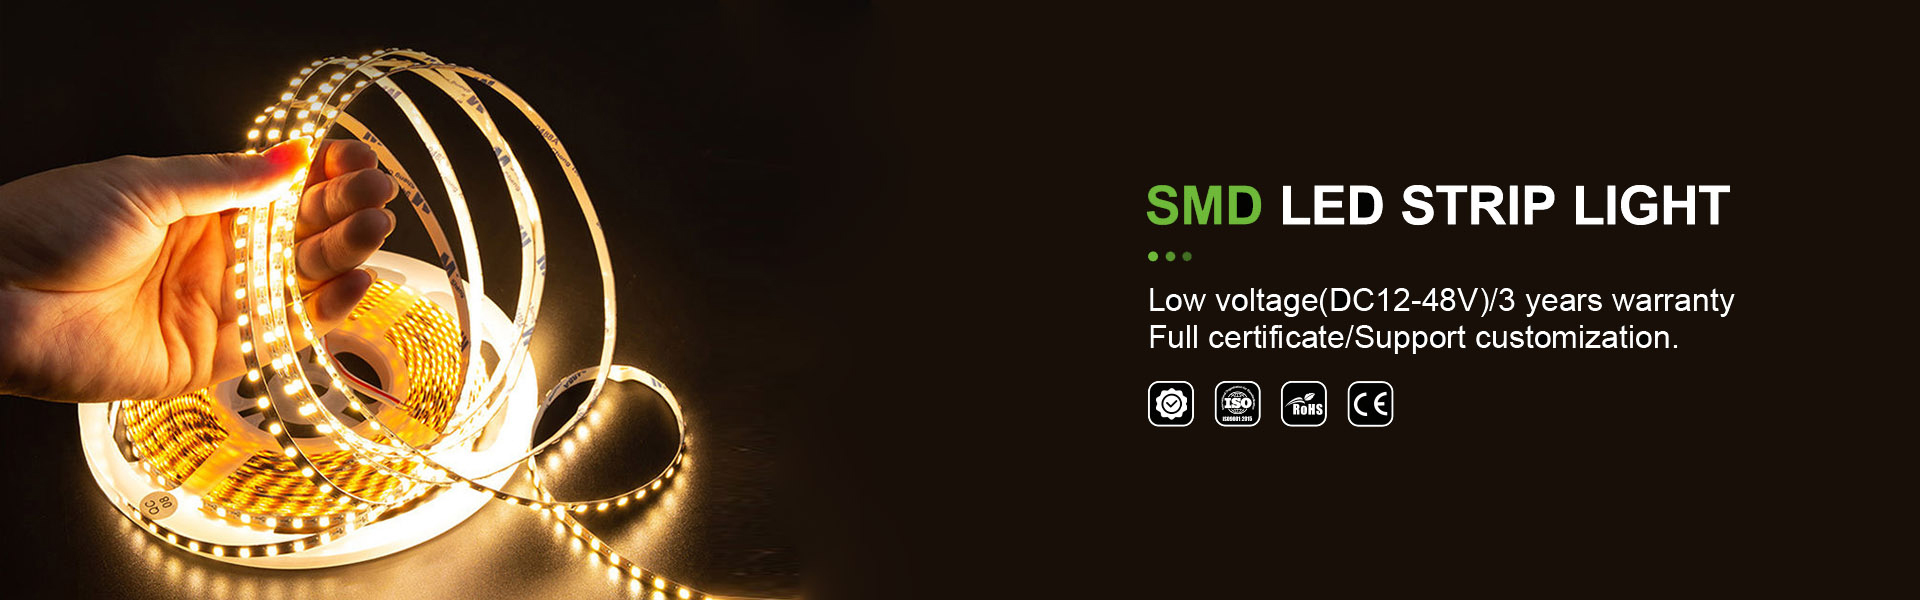 светодиодная полоса освещение, неоновое освещение, освещение полоса Cob,AWS (SZ) Technology Company Limited